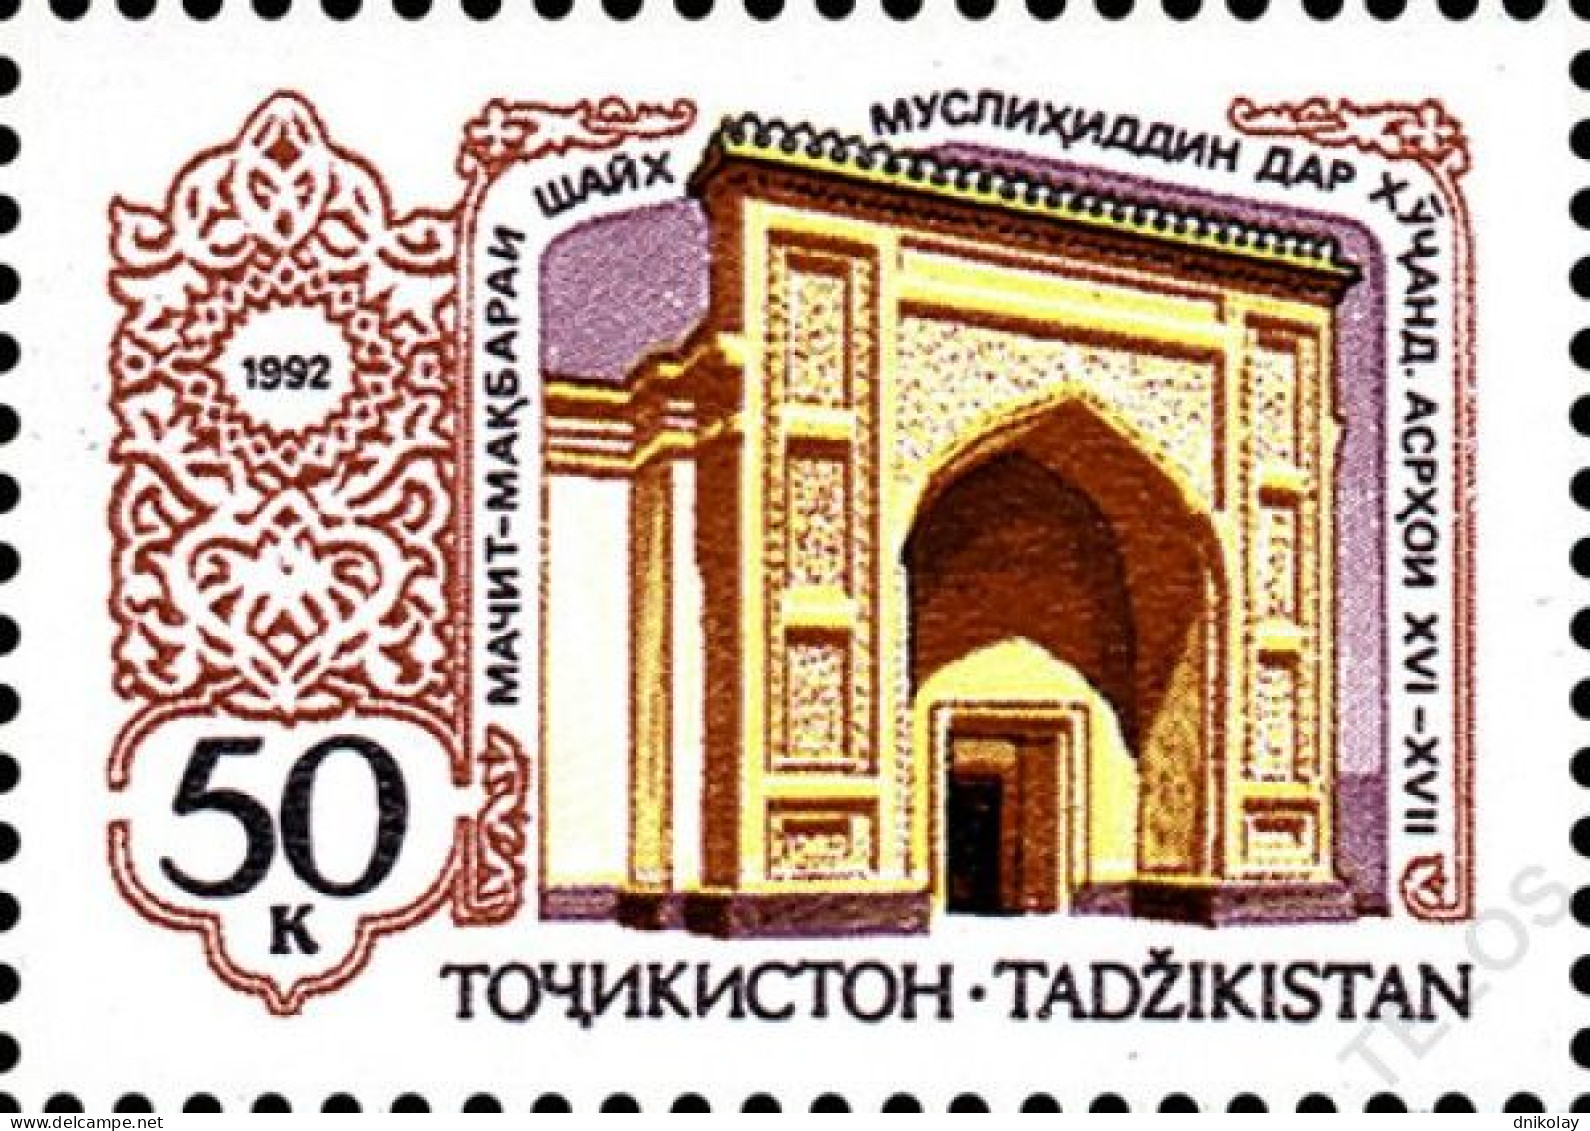 1992 2 Tajikistan Architecture Monument Of Tadjikistan MNH - Tadjikistan